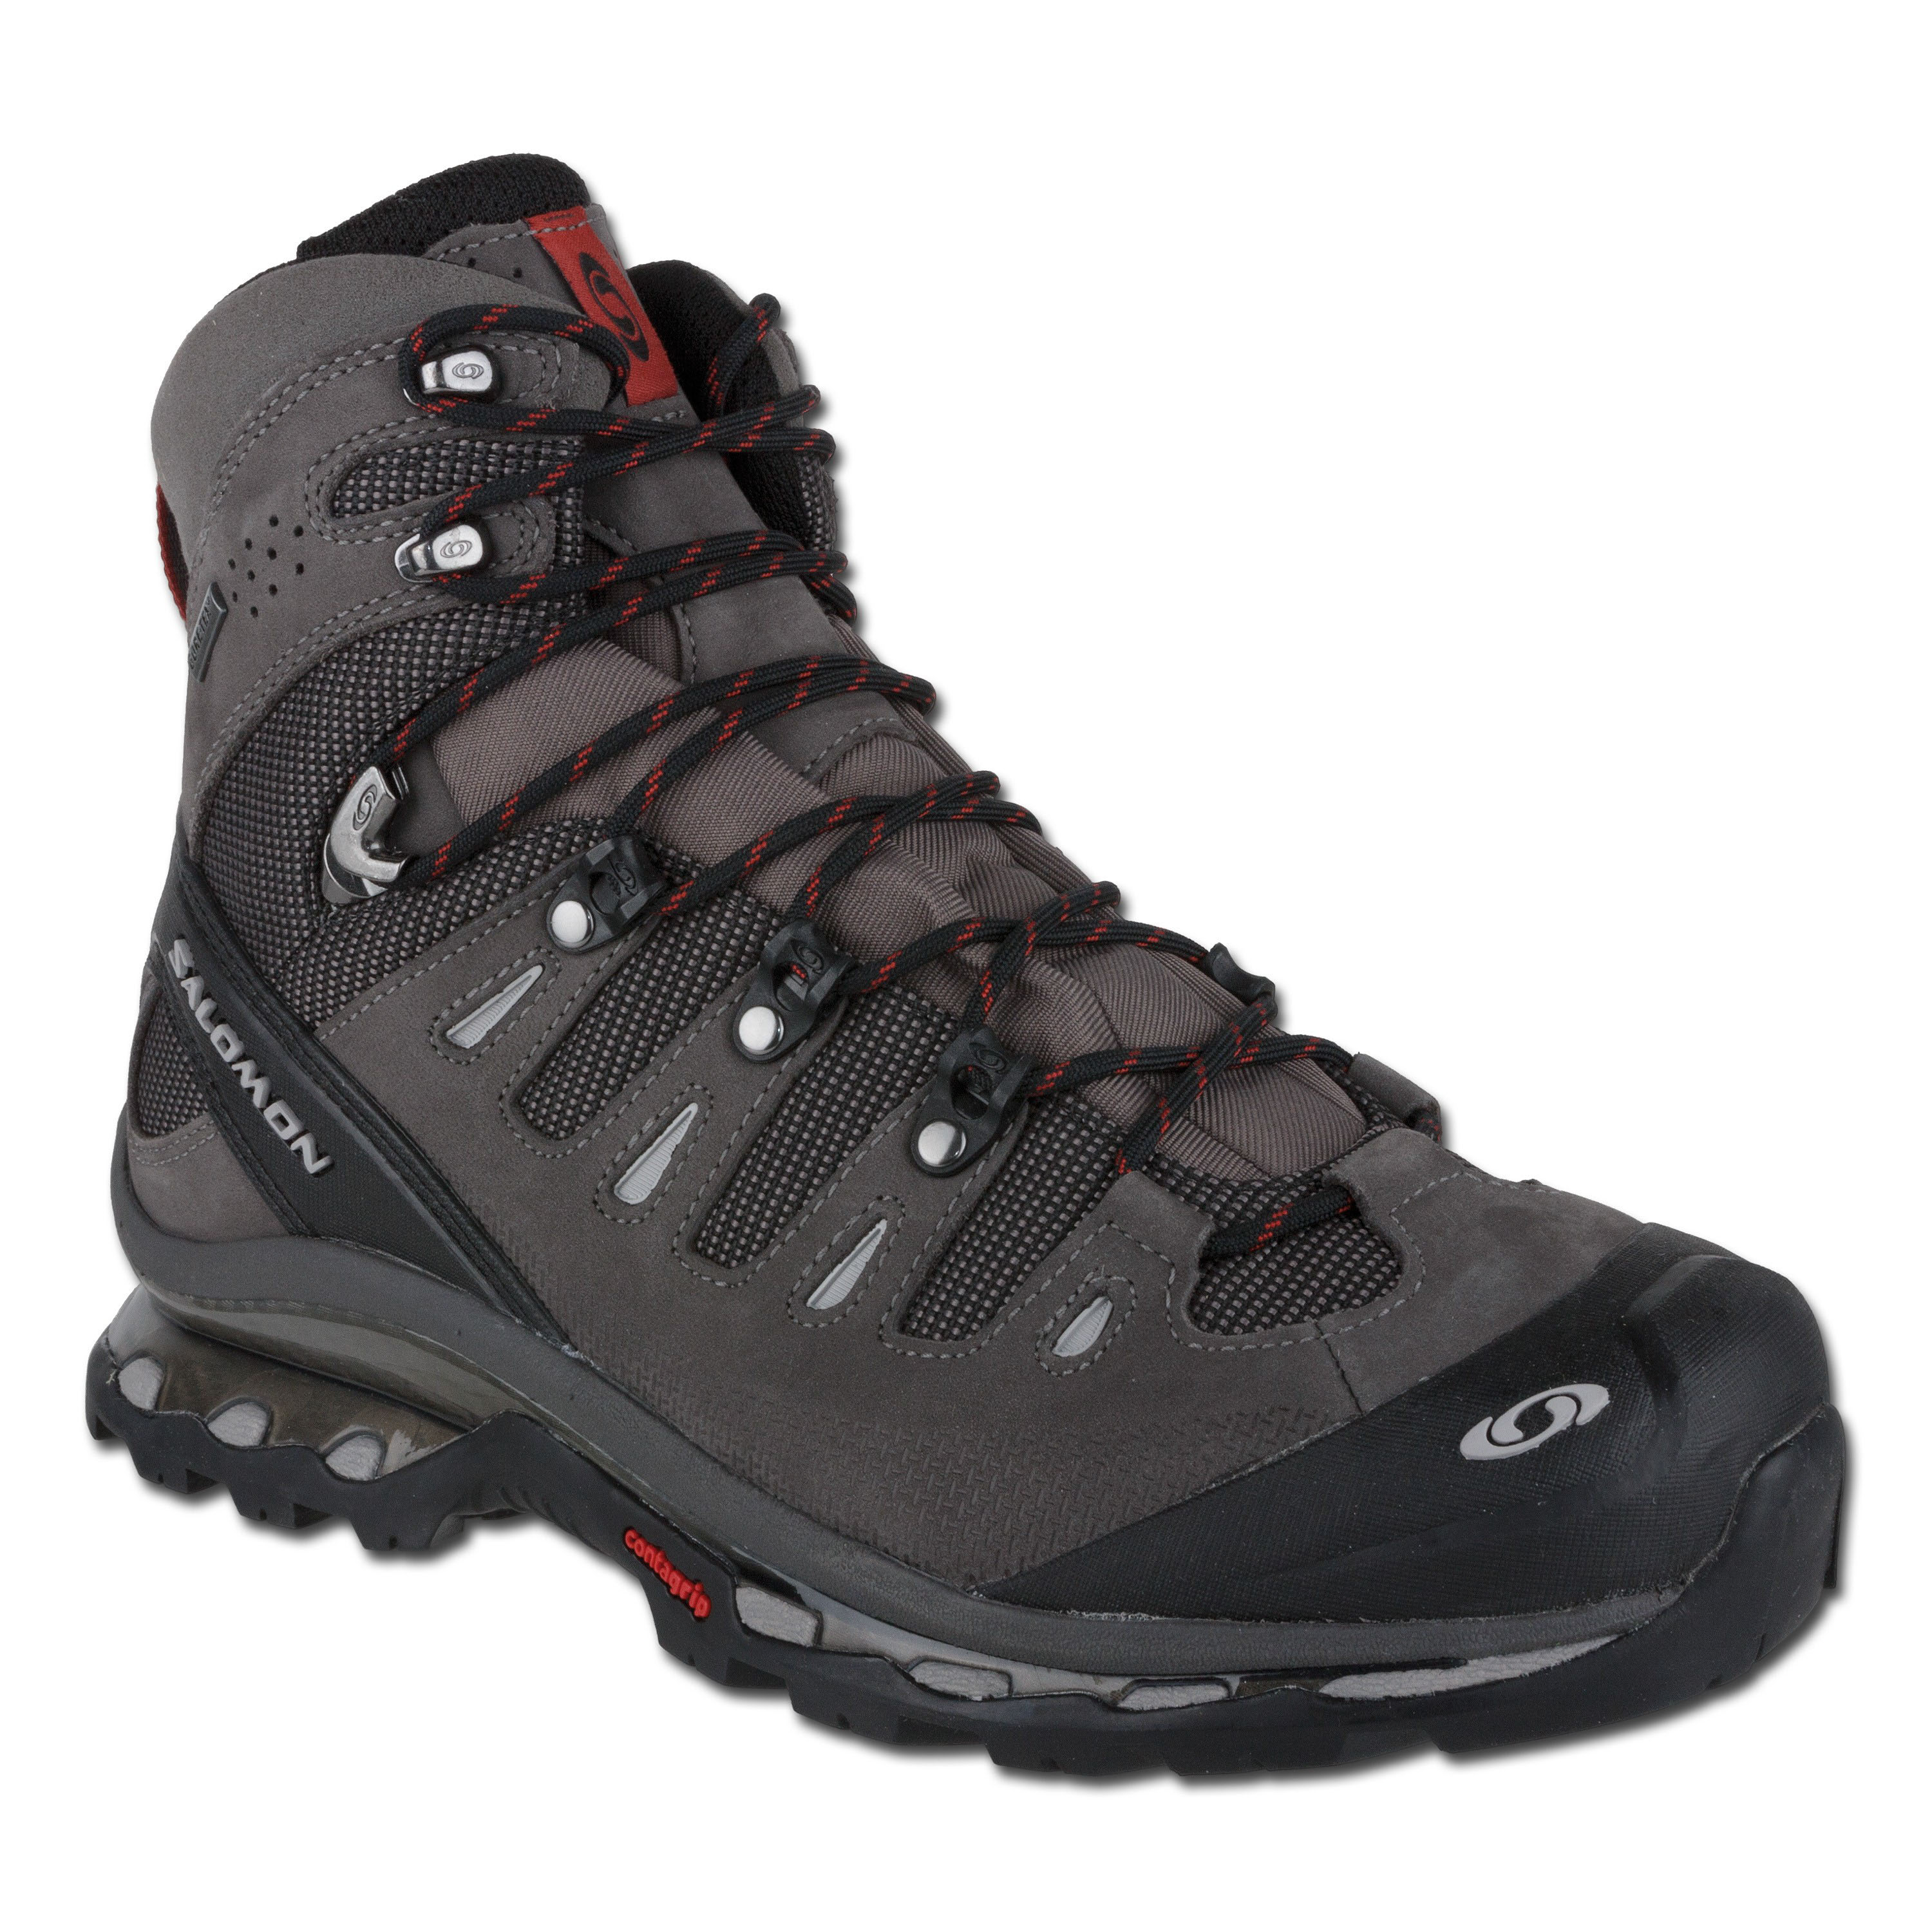 Salomon Boots Quest 4D GTX gray | Salomon Boots Quest 4D gray | Hiking Boots | Boots | Footwear Clothing